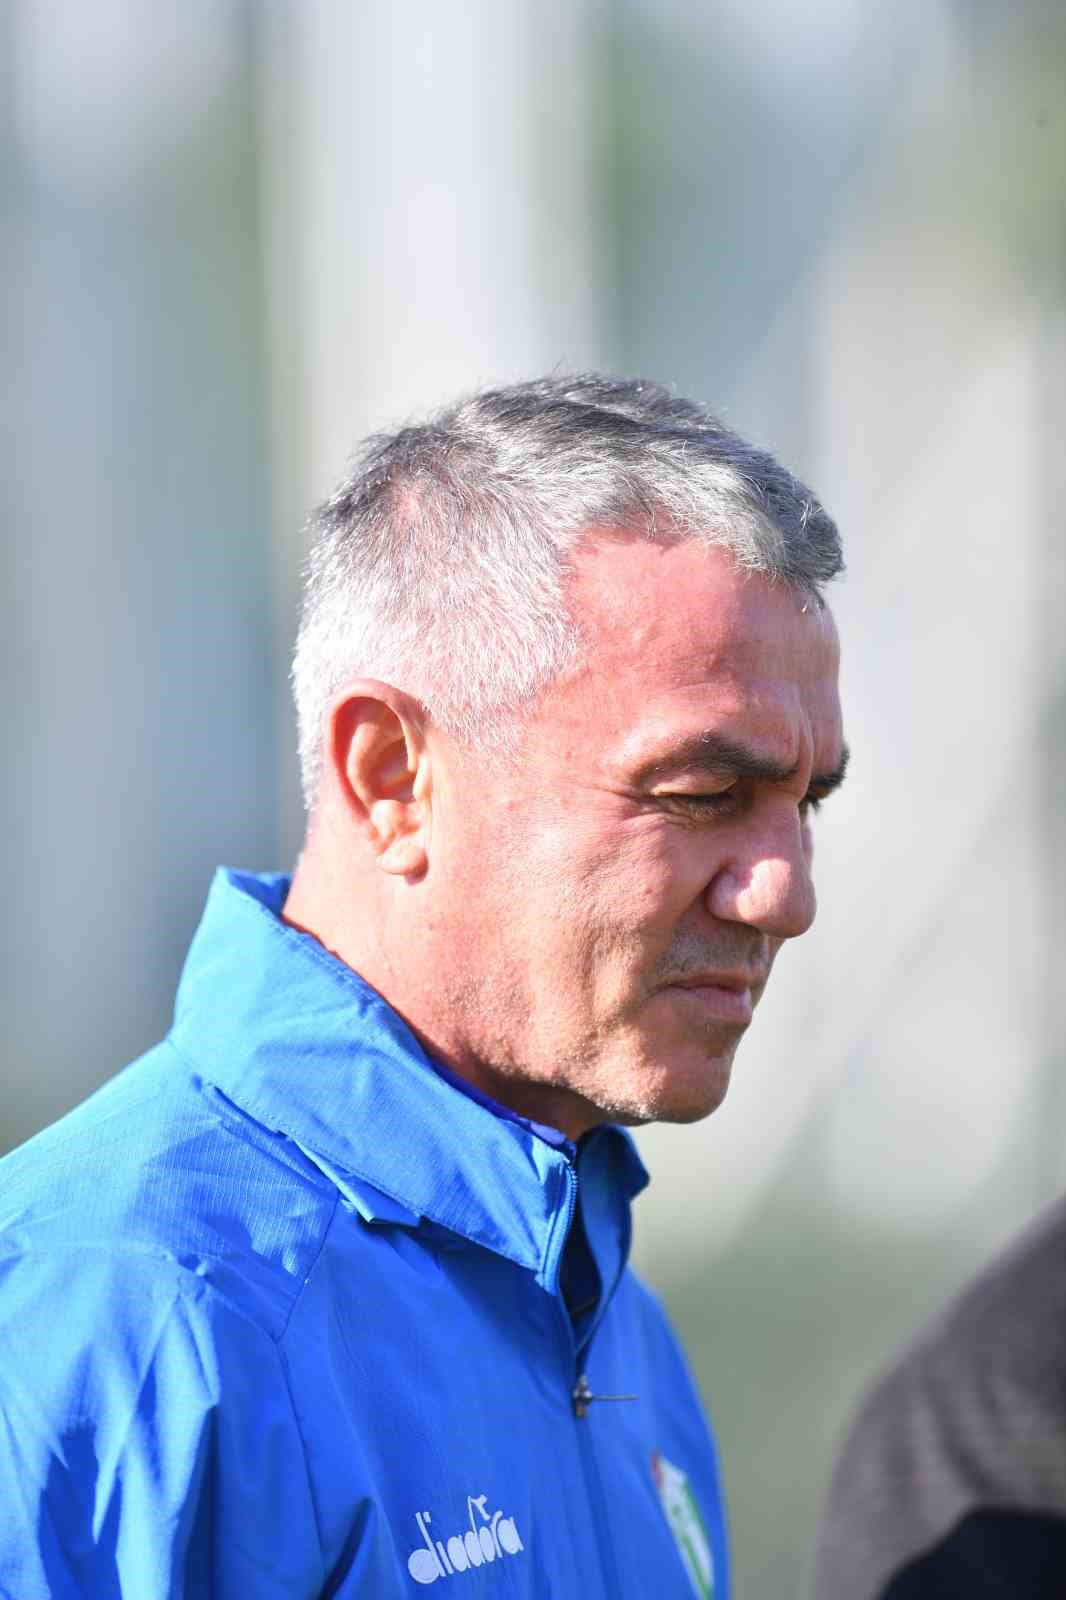 Bursaspor’un yeni teknik direktörü Ümit Şengül oldu